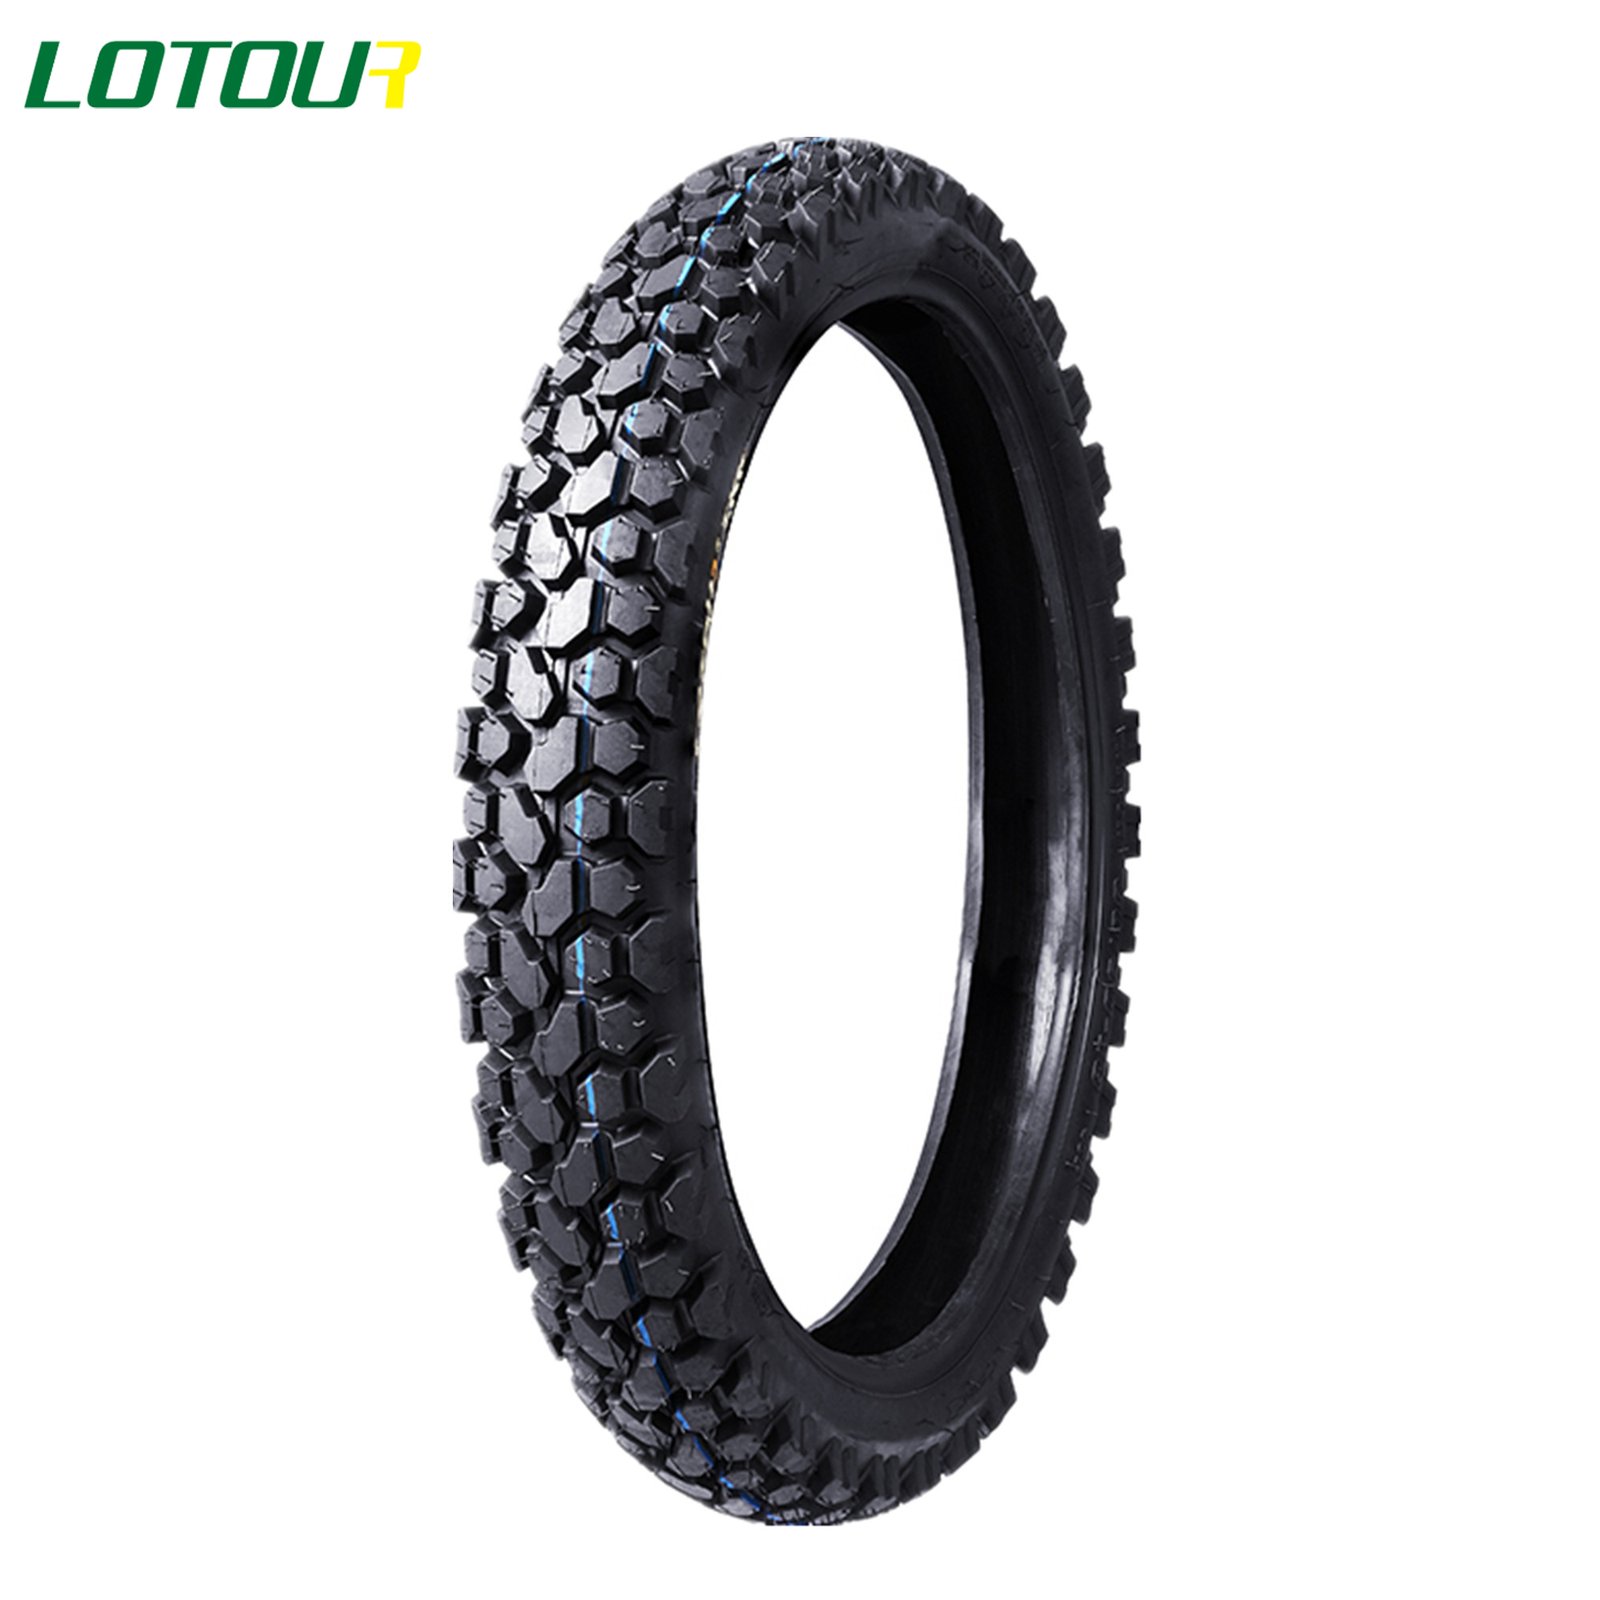 Lotour Tire M3058